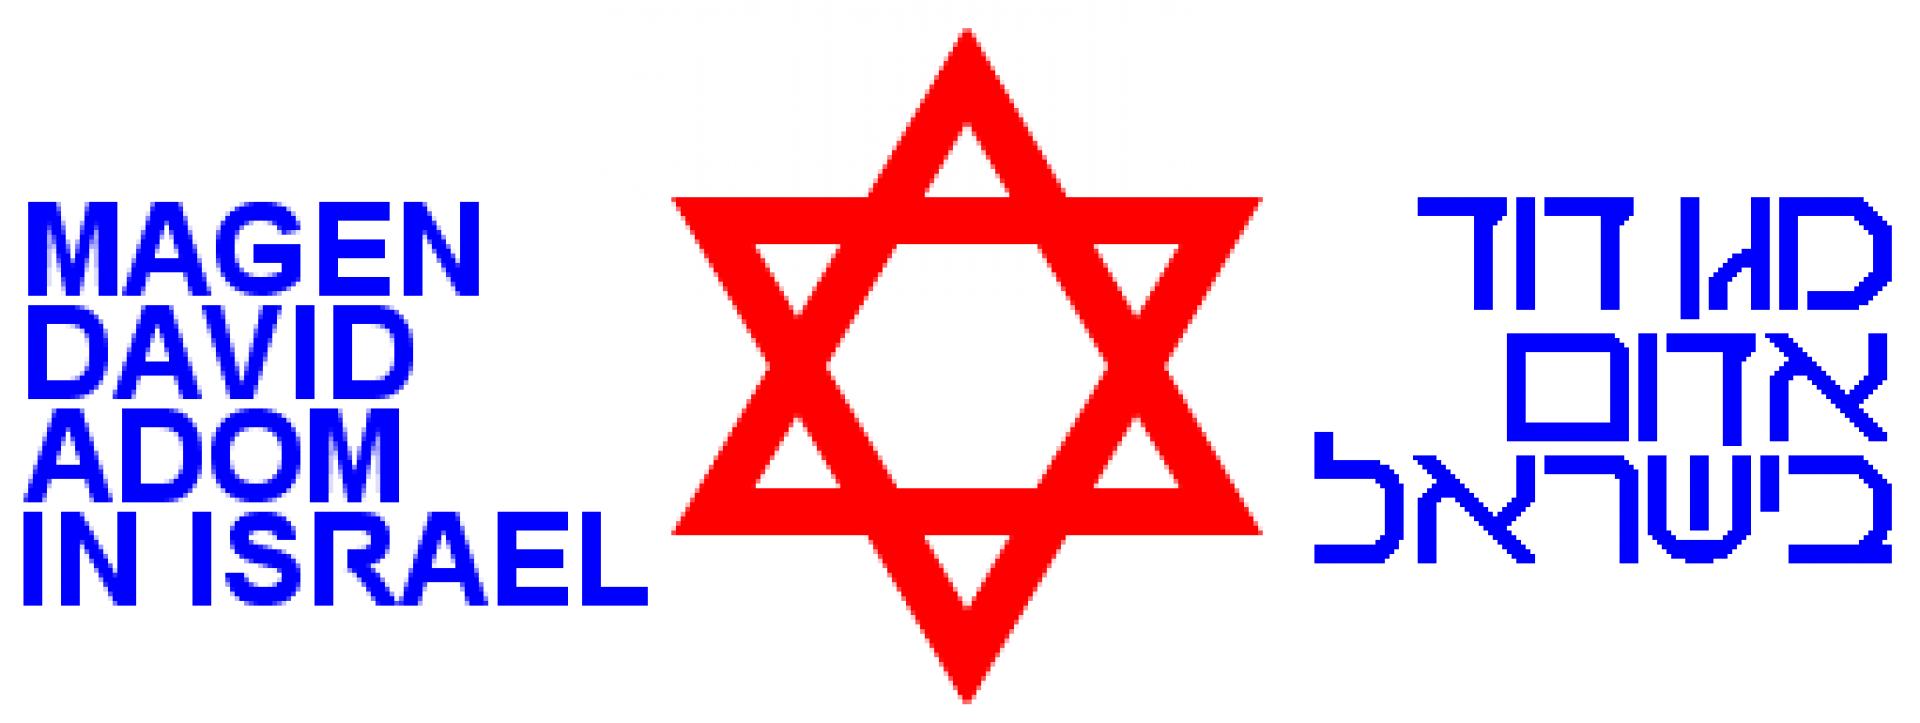 Magen David Adom (hebräisch: מגן דוד אדום, Abk. MDA) logo